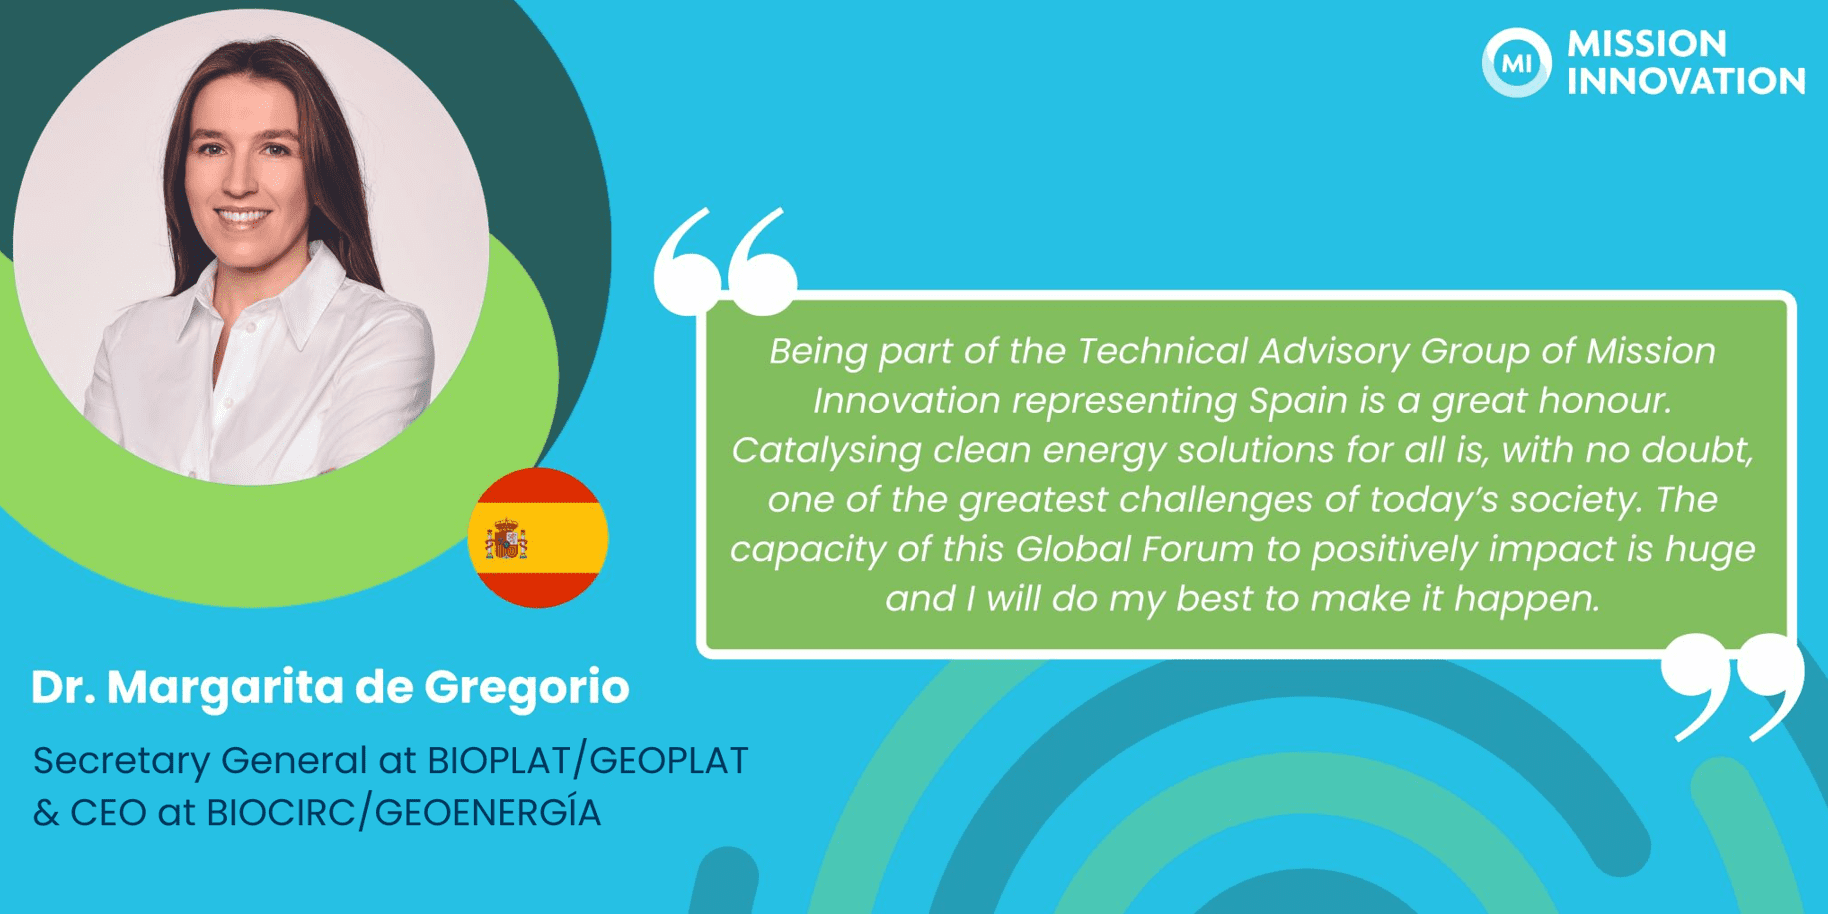 Margarita de Gregorio es elegida representante de España en el Grupo de Asesoramiento Técnico de Mission Innovation